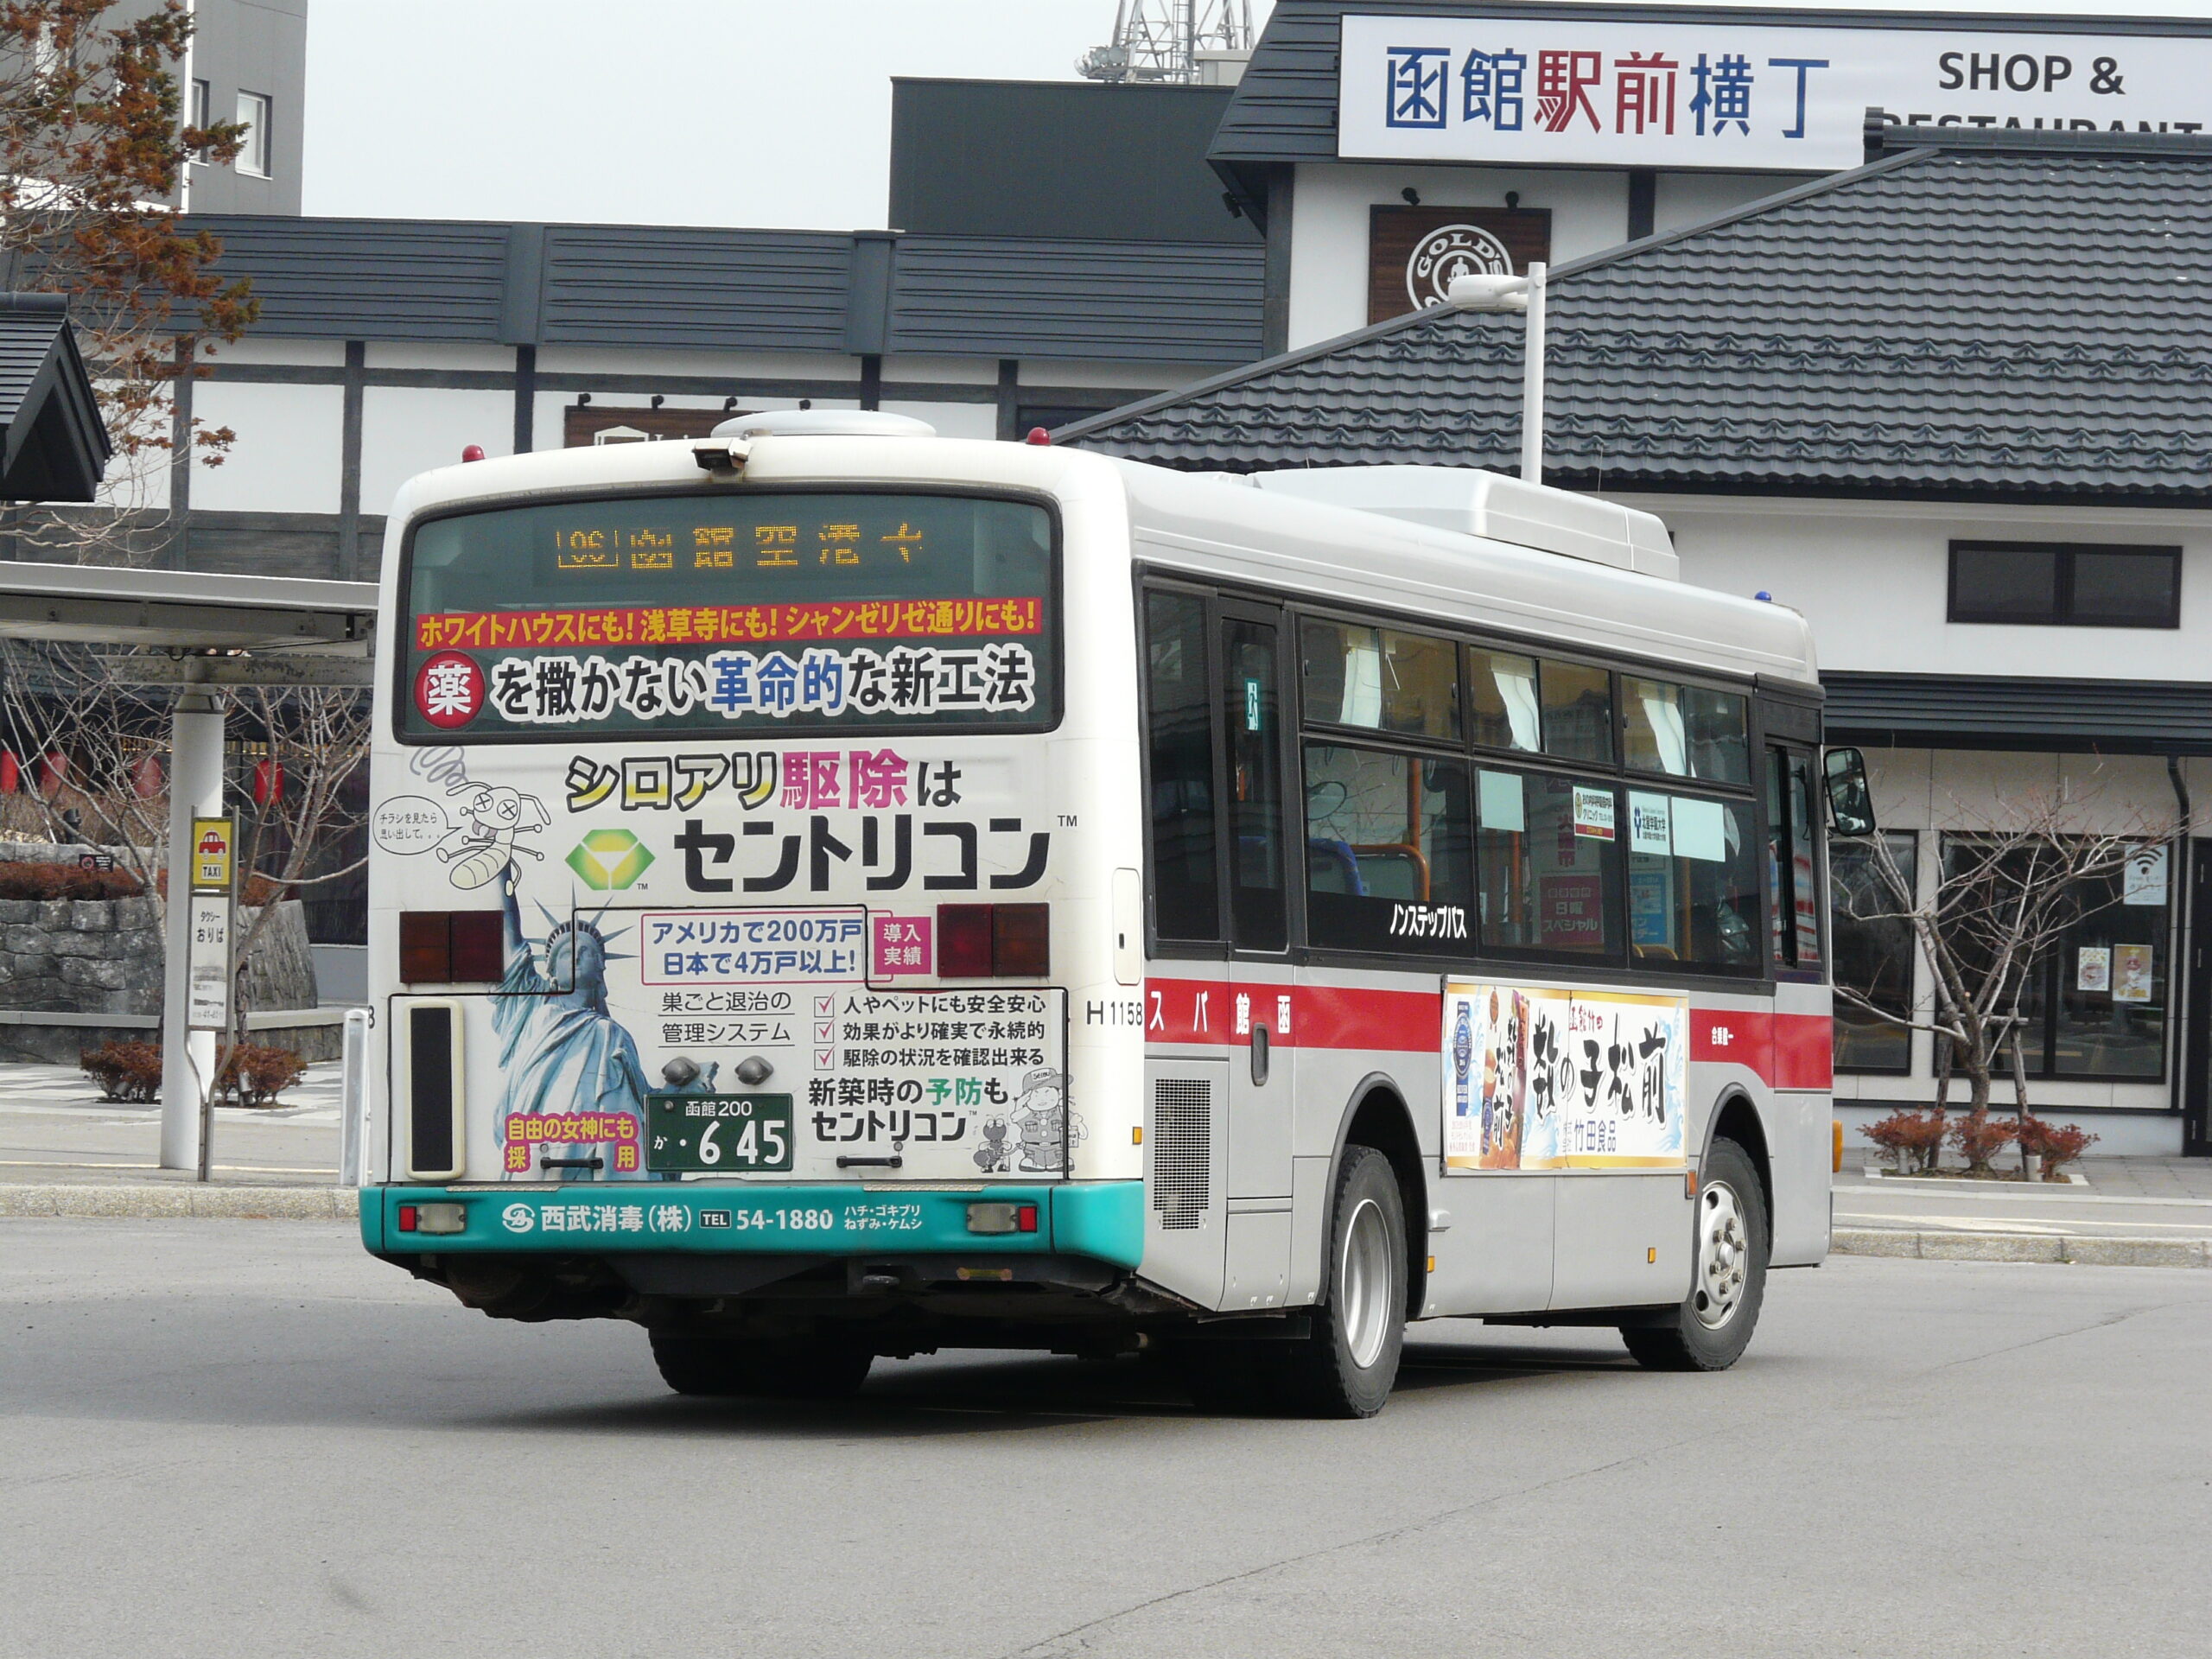 函館バス いすゞ H1158 （SDG-LR290J1） | けんま編集長の函館バス写真 